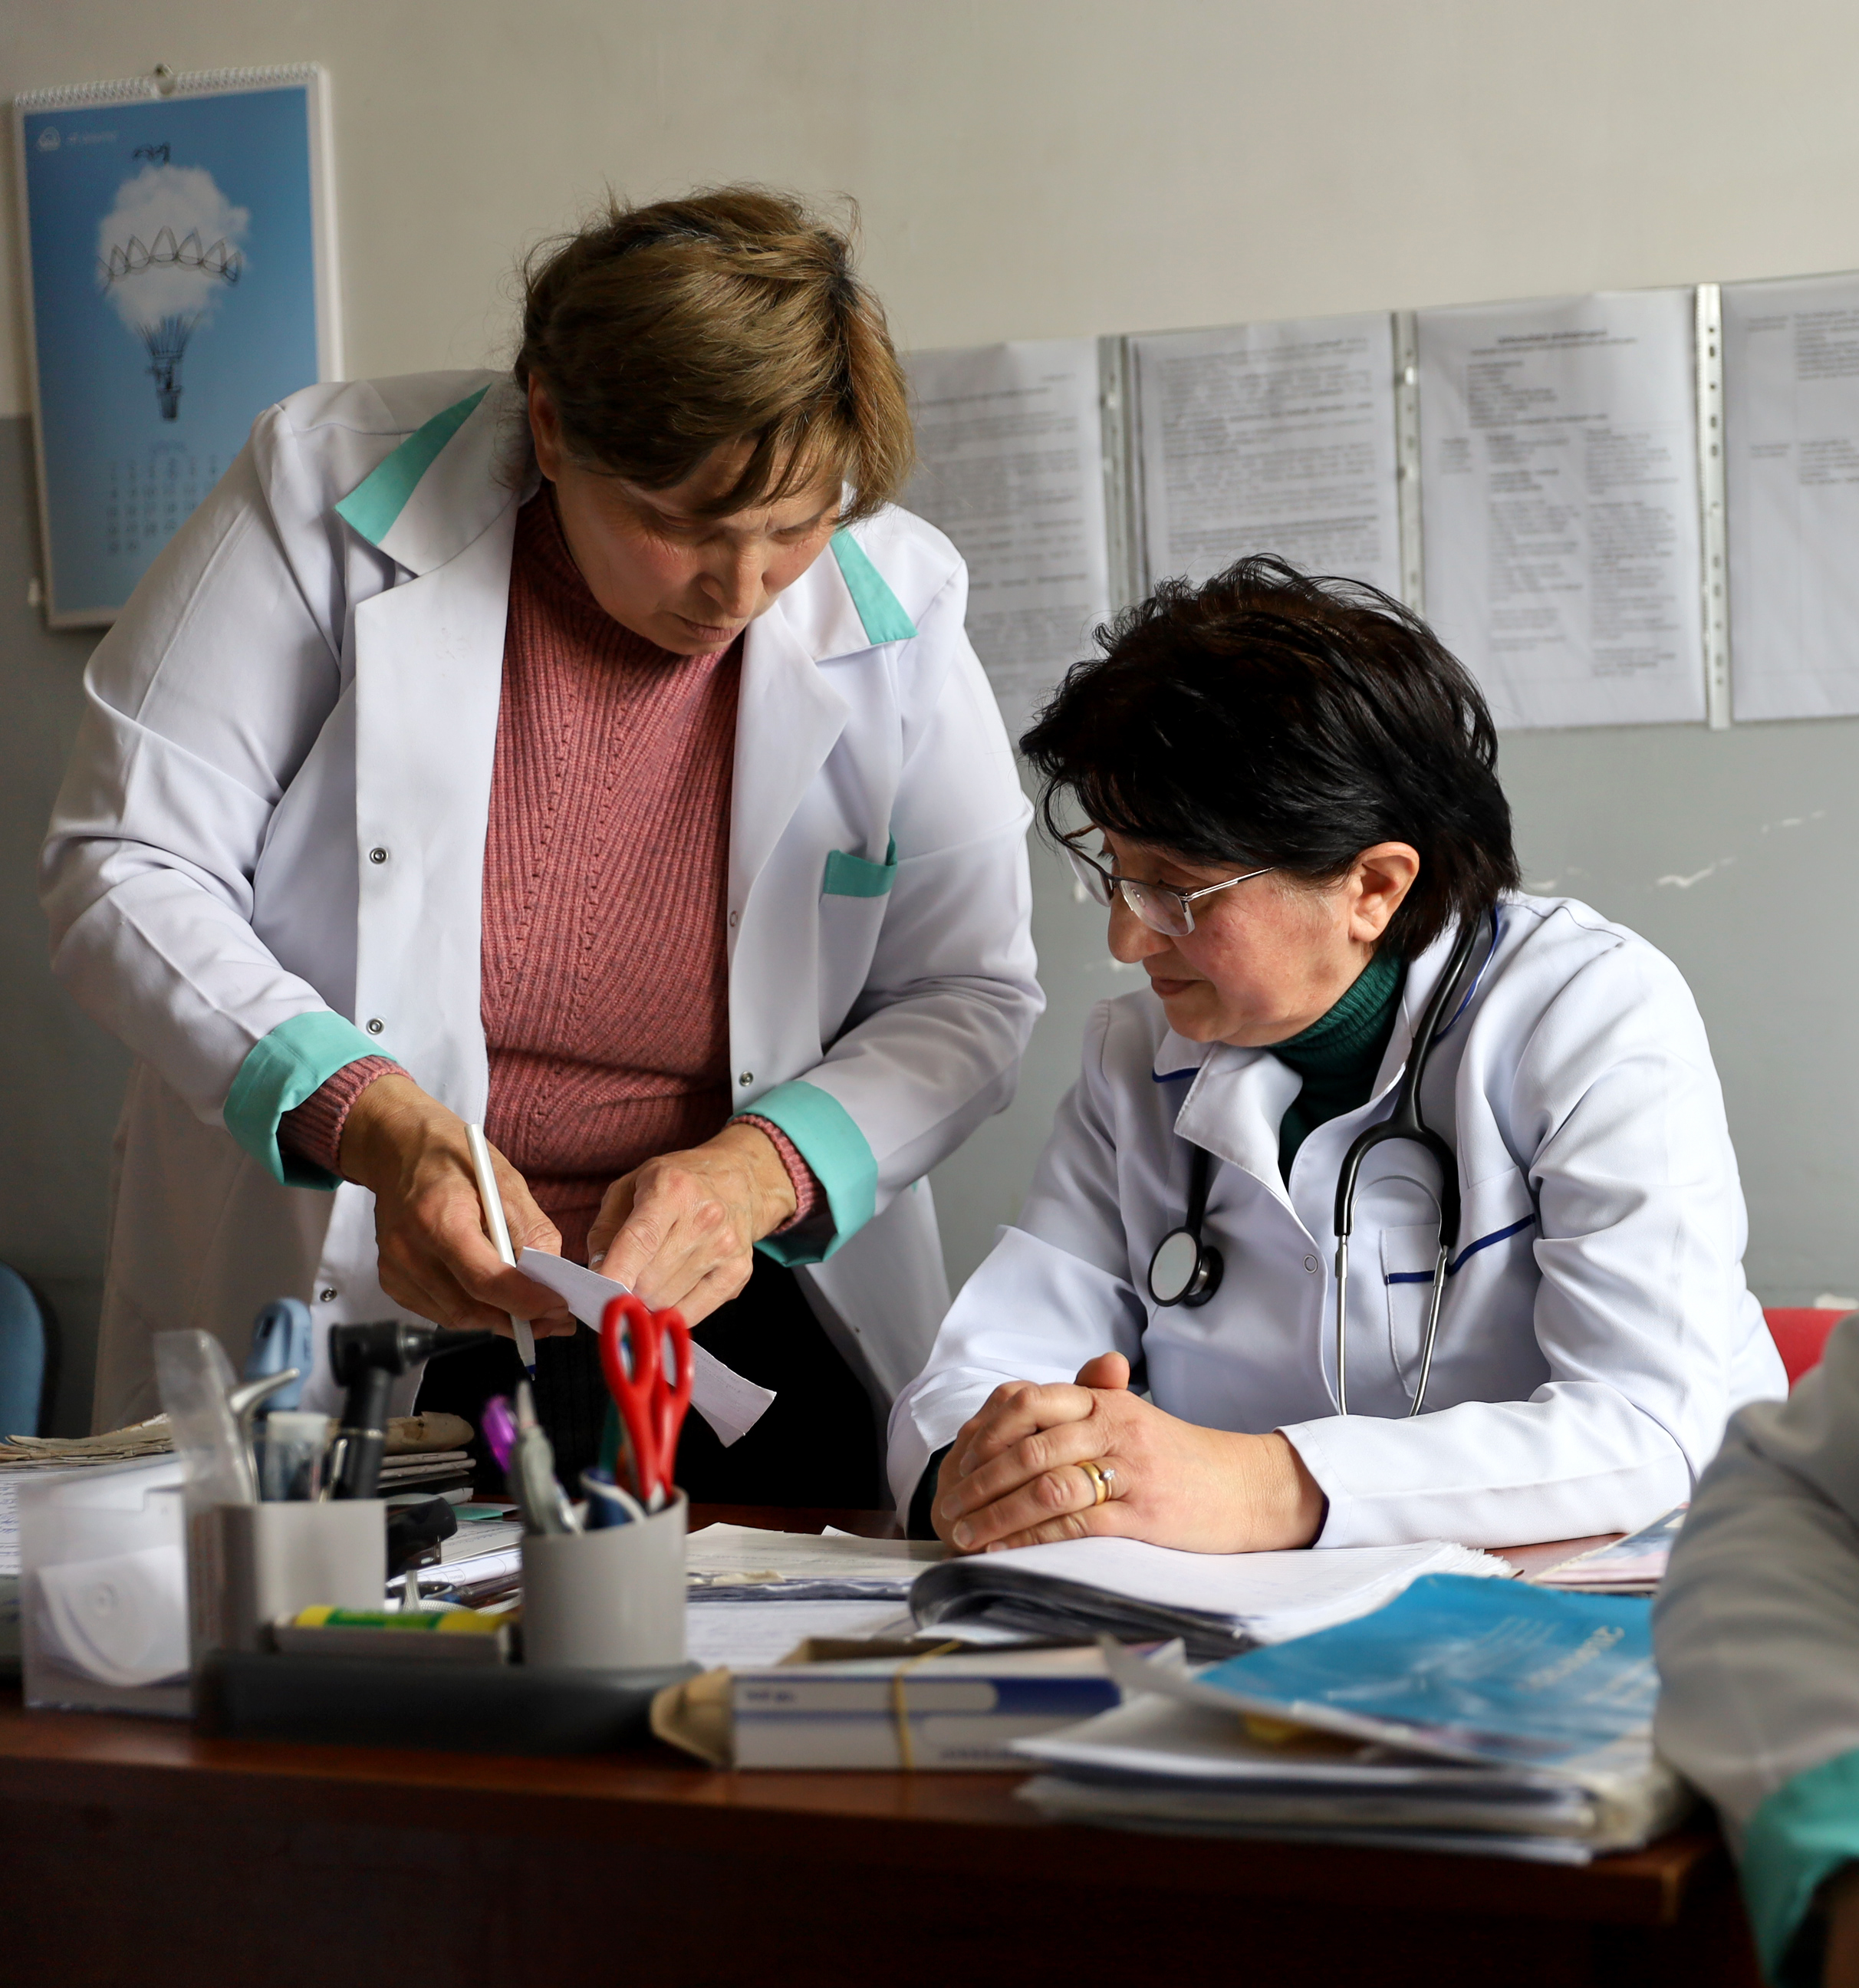 Նկարում պատկերված են երկու կանայք․ Լուսինե Ռոստոմյանը, որը սեղանի մոտ է նստած և իր բուժքույրը, որը թուղթը ձեռքին բժիշկից ինչ որ բան է ճշտում